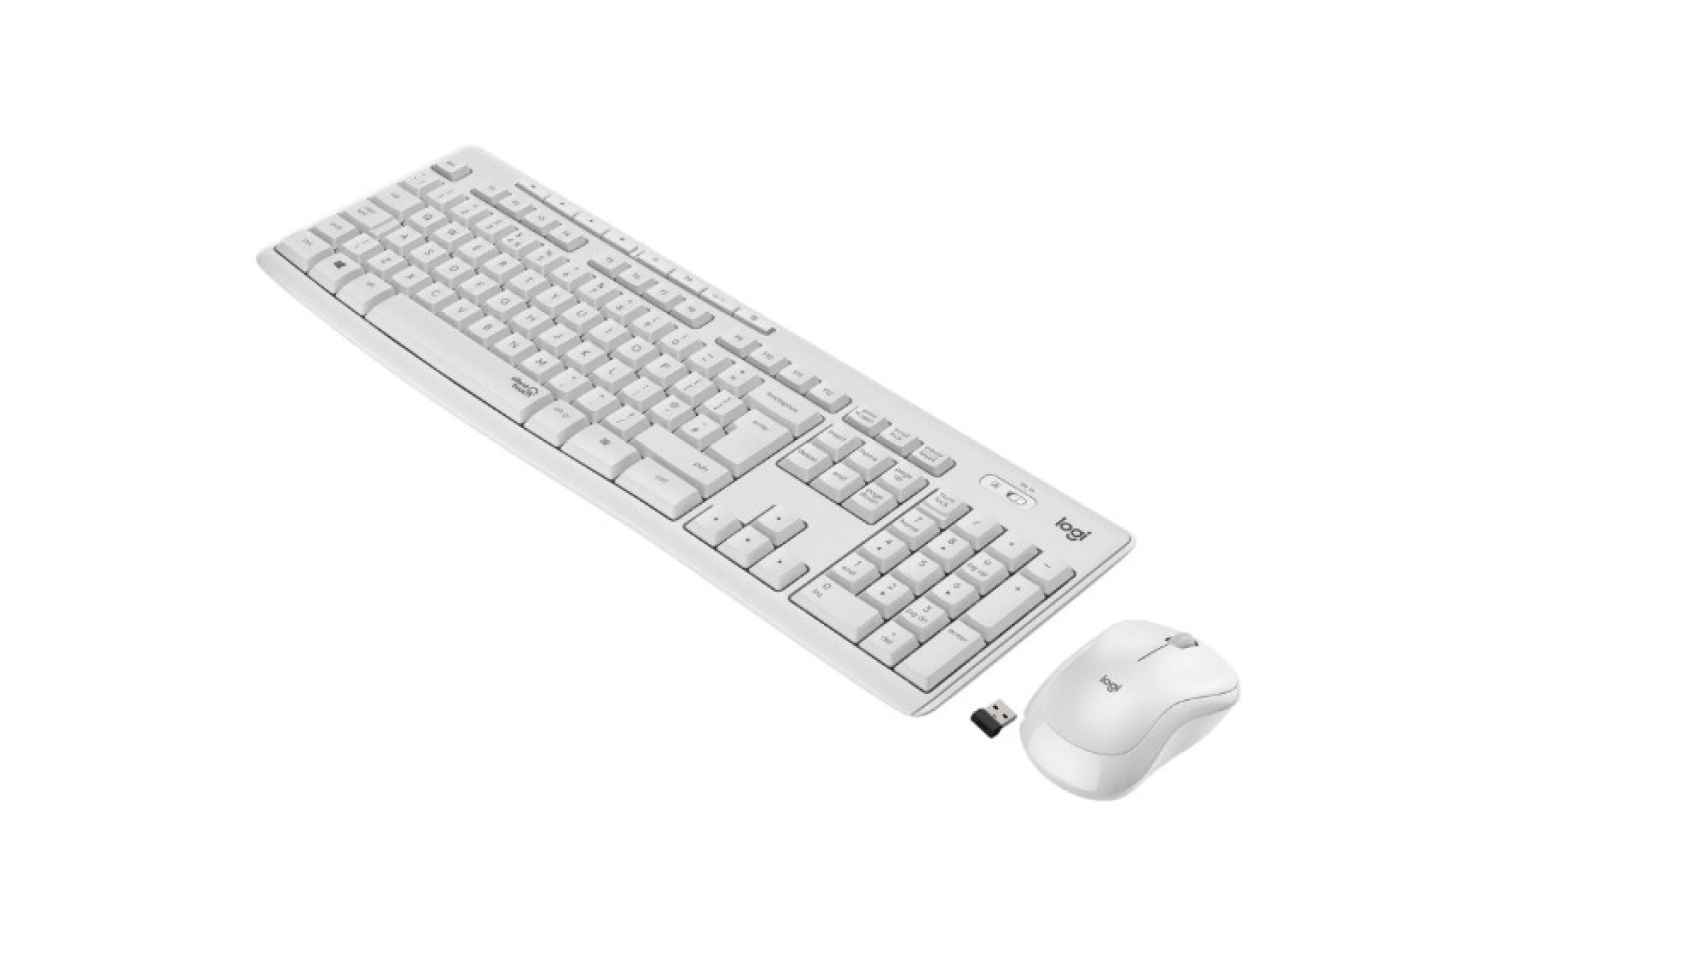 Formas de limpiar el teclado de tu ordenador o tu portátil - Blog de  PcComponentes